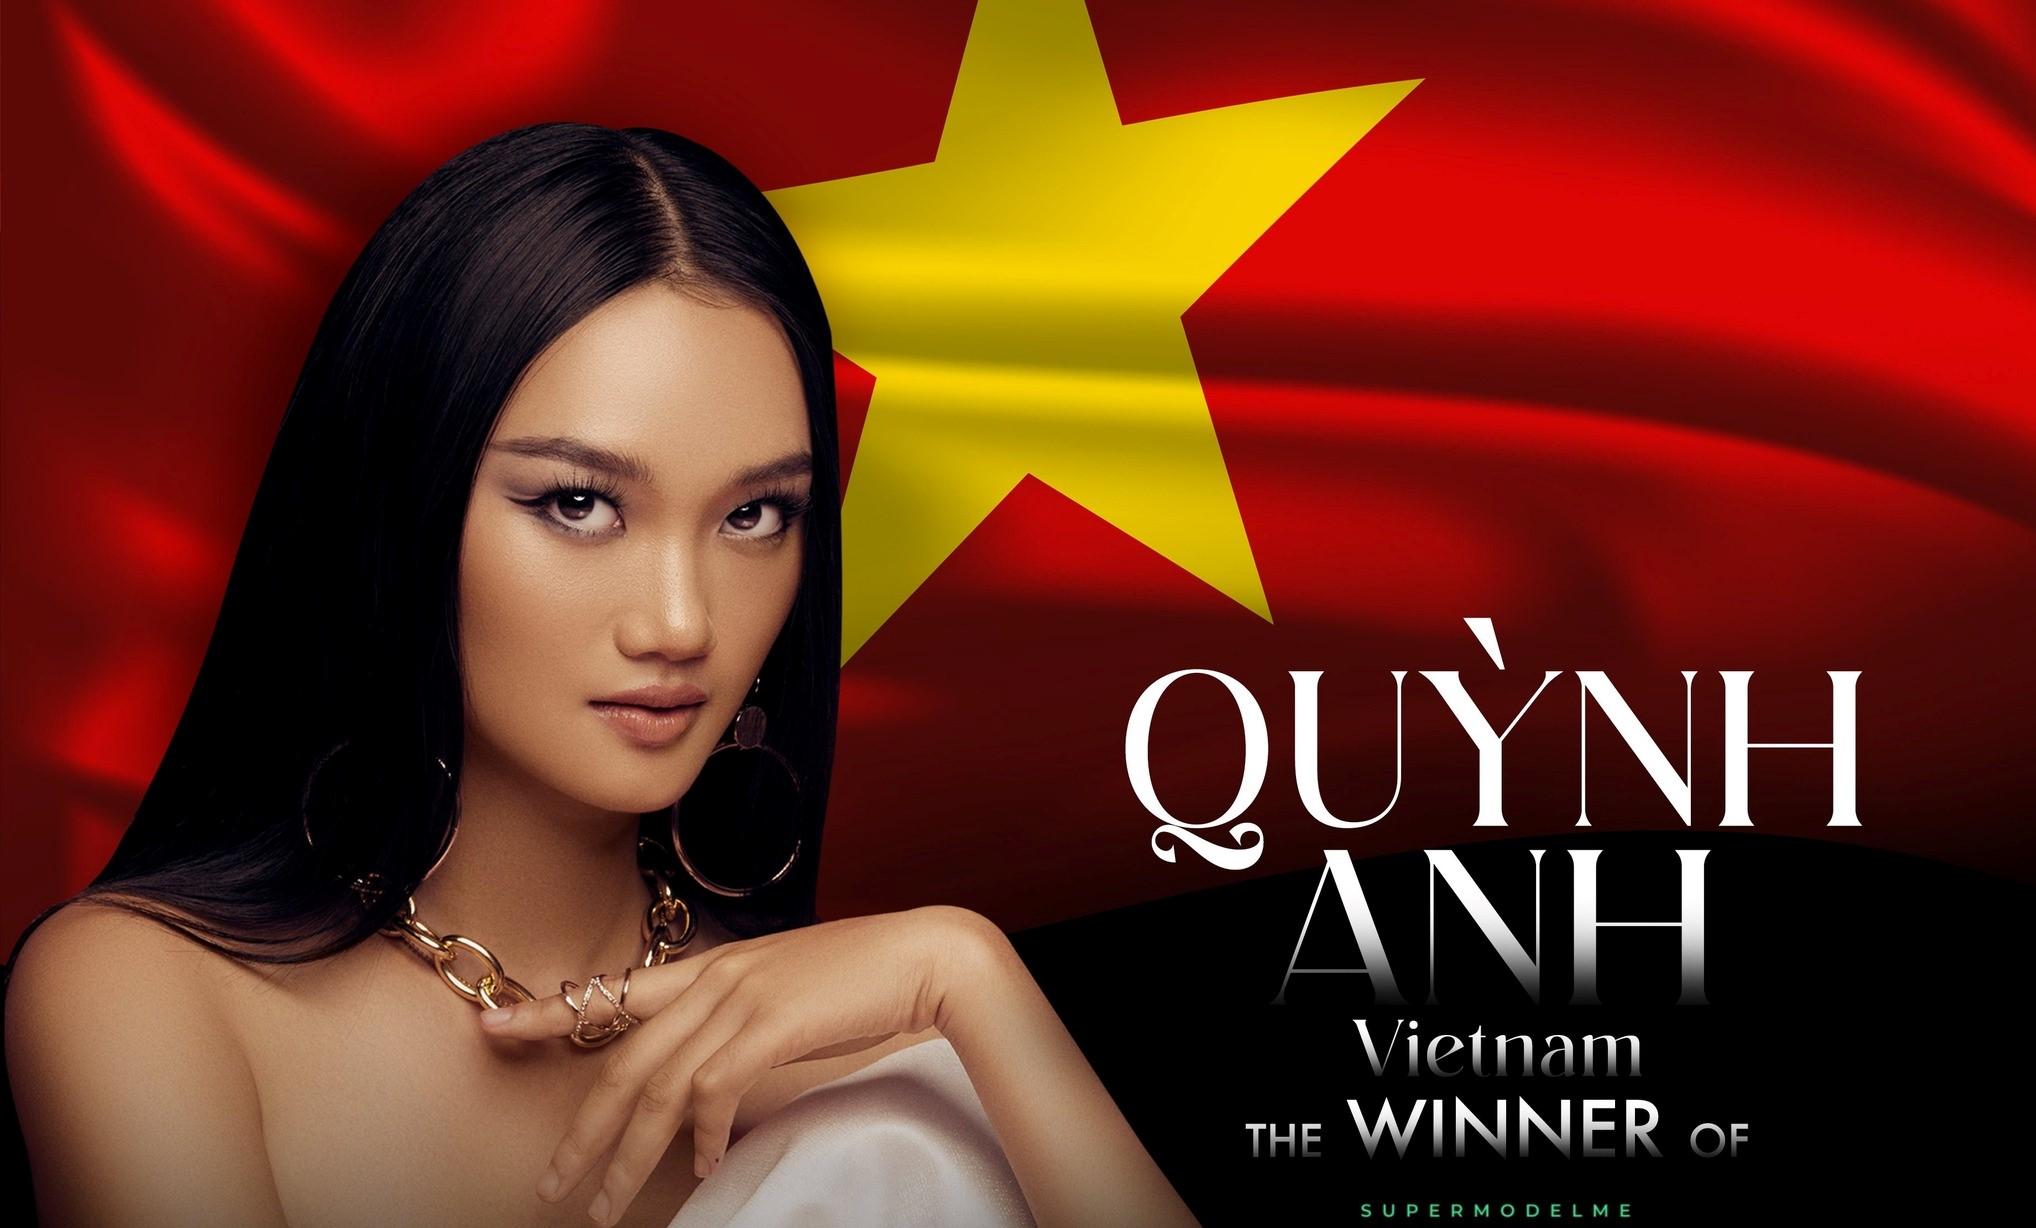 Siêu mẫu châu Á và người mẫu nổi tiếng Việt Nam Quỳnh Anh đang thu hút sự chú ý của giới truyền thông và khán giả. Với ngoại hình quyến rũ và sự nghiệp thành công trong ngành thời trang, Quỳnh Anh thực sự là một người mẫu tài năng và quyến rũ.